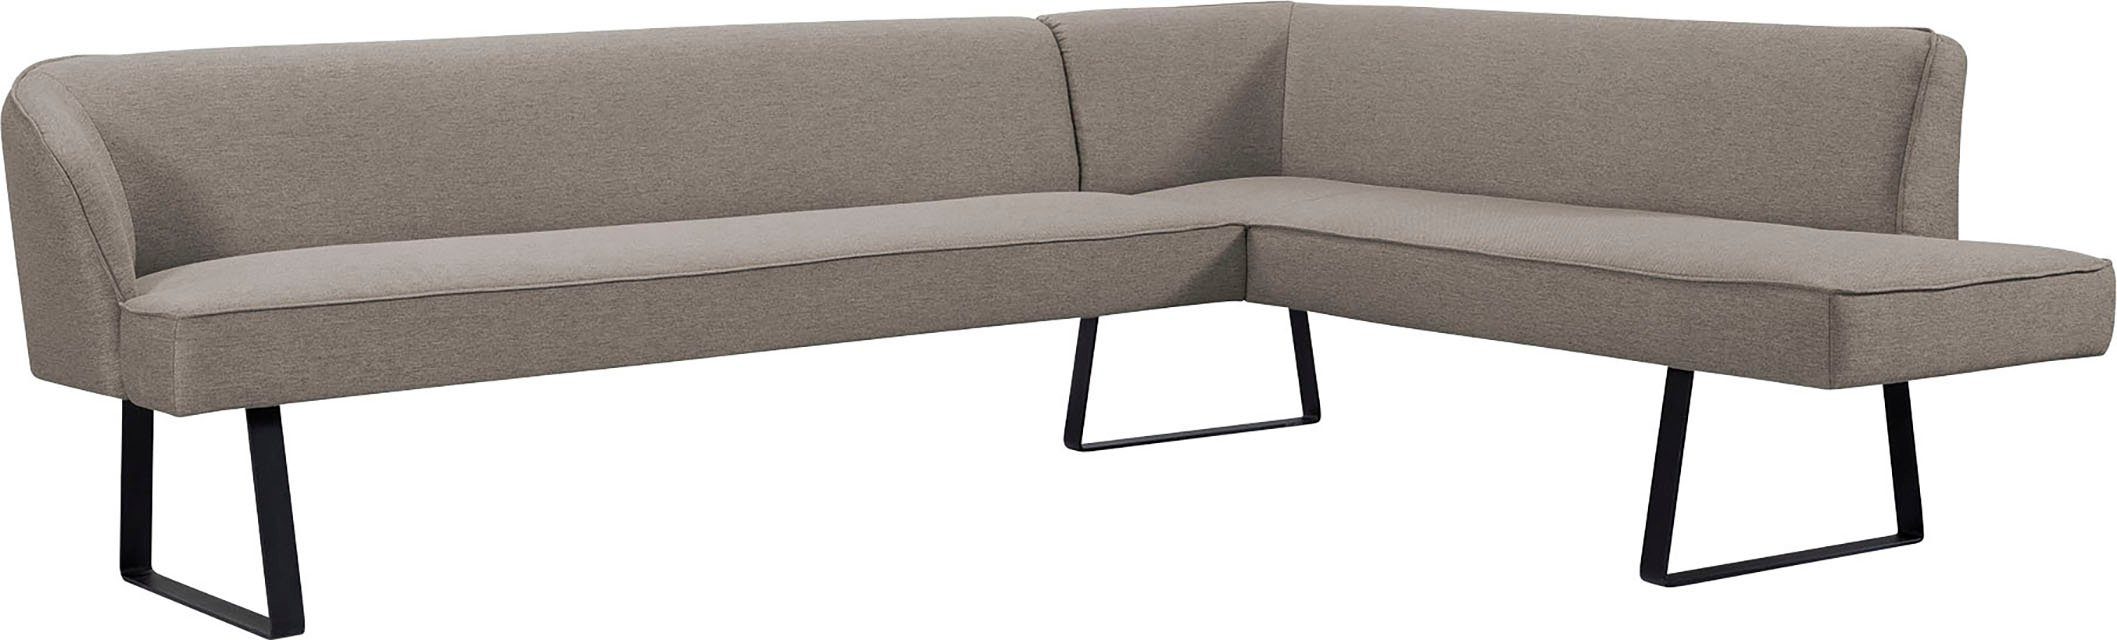 exxpo - sofa fashion Eckbank verschiedenen Americano, Qualitäten in und Metallfüßen, Keder mit Bezug